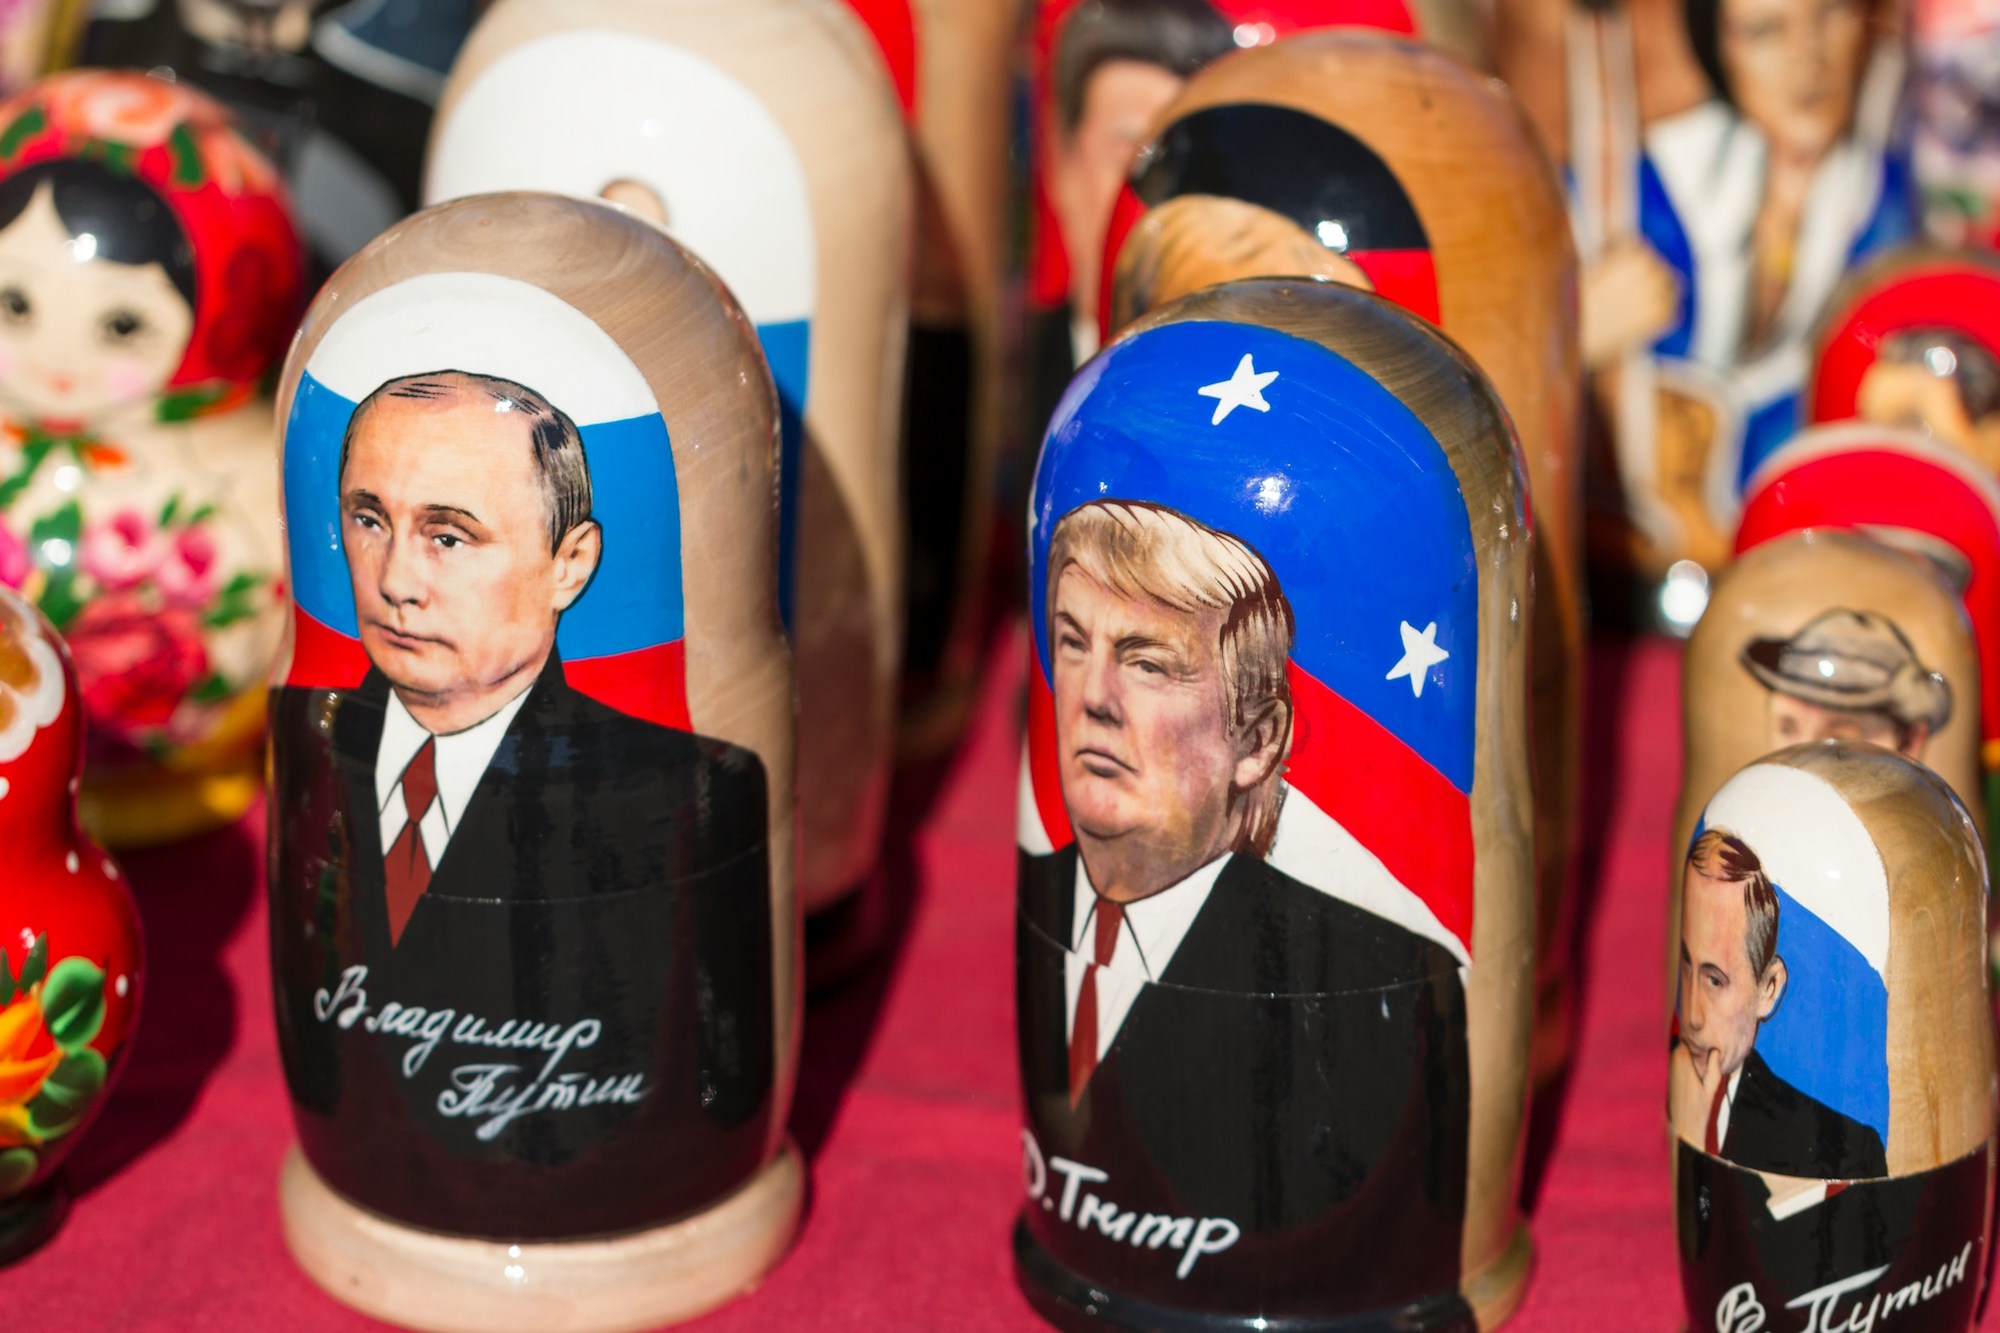 Trump ist nicht Putin, aber sollte er gewählt werden, besteht durchaus die Gefahr, dass er die USA in ein autoritäres Präsidialsystem umbaut – mit Folgen auch für Europa. (c) Jorgen Haland/unsplash.com